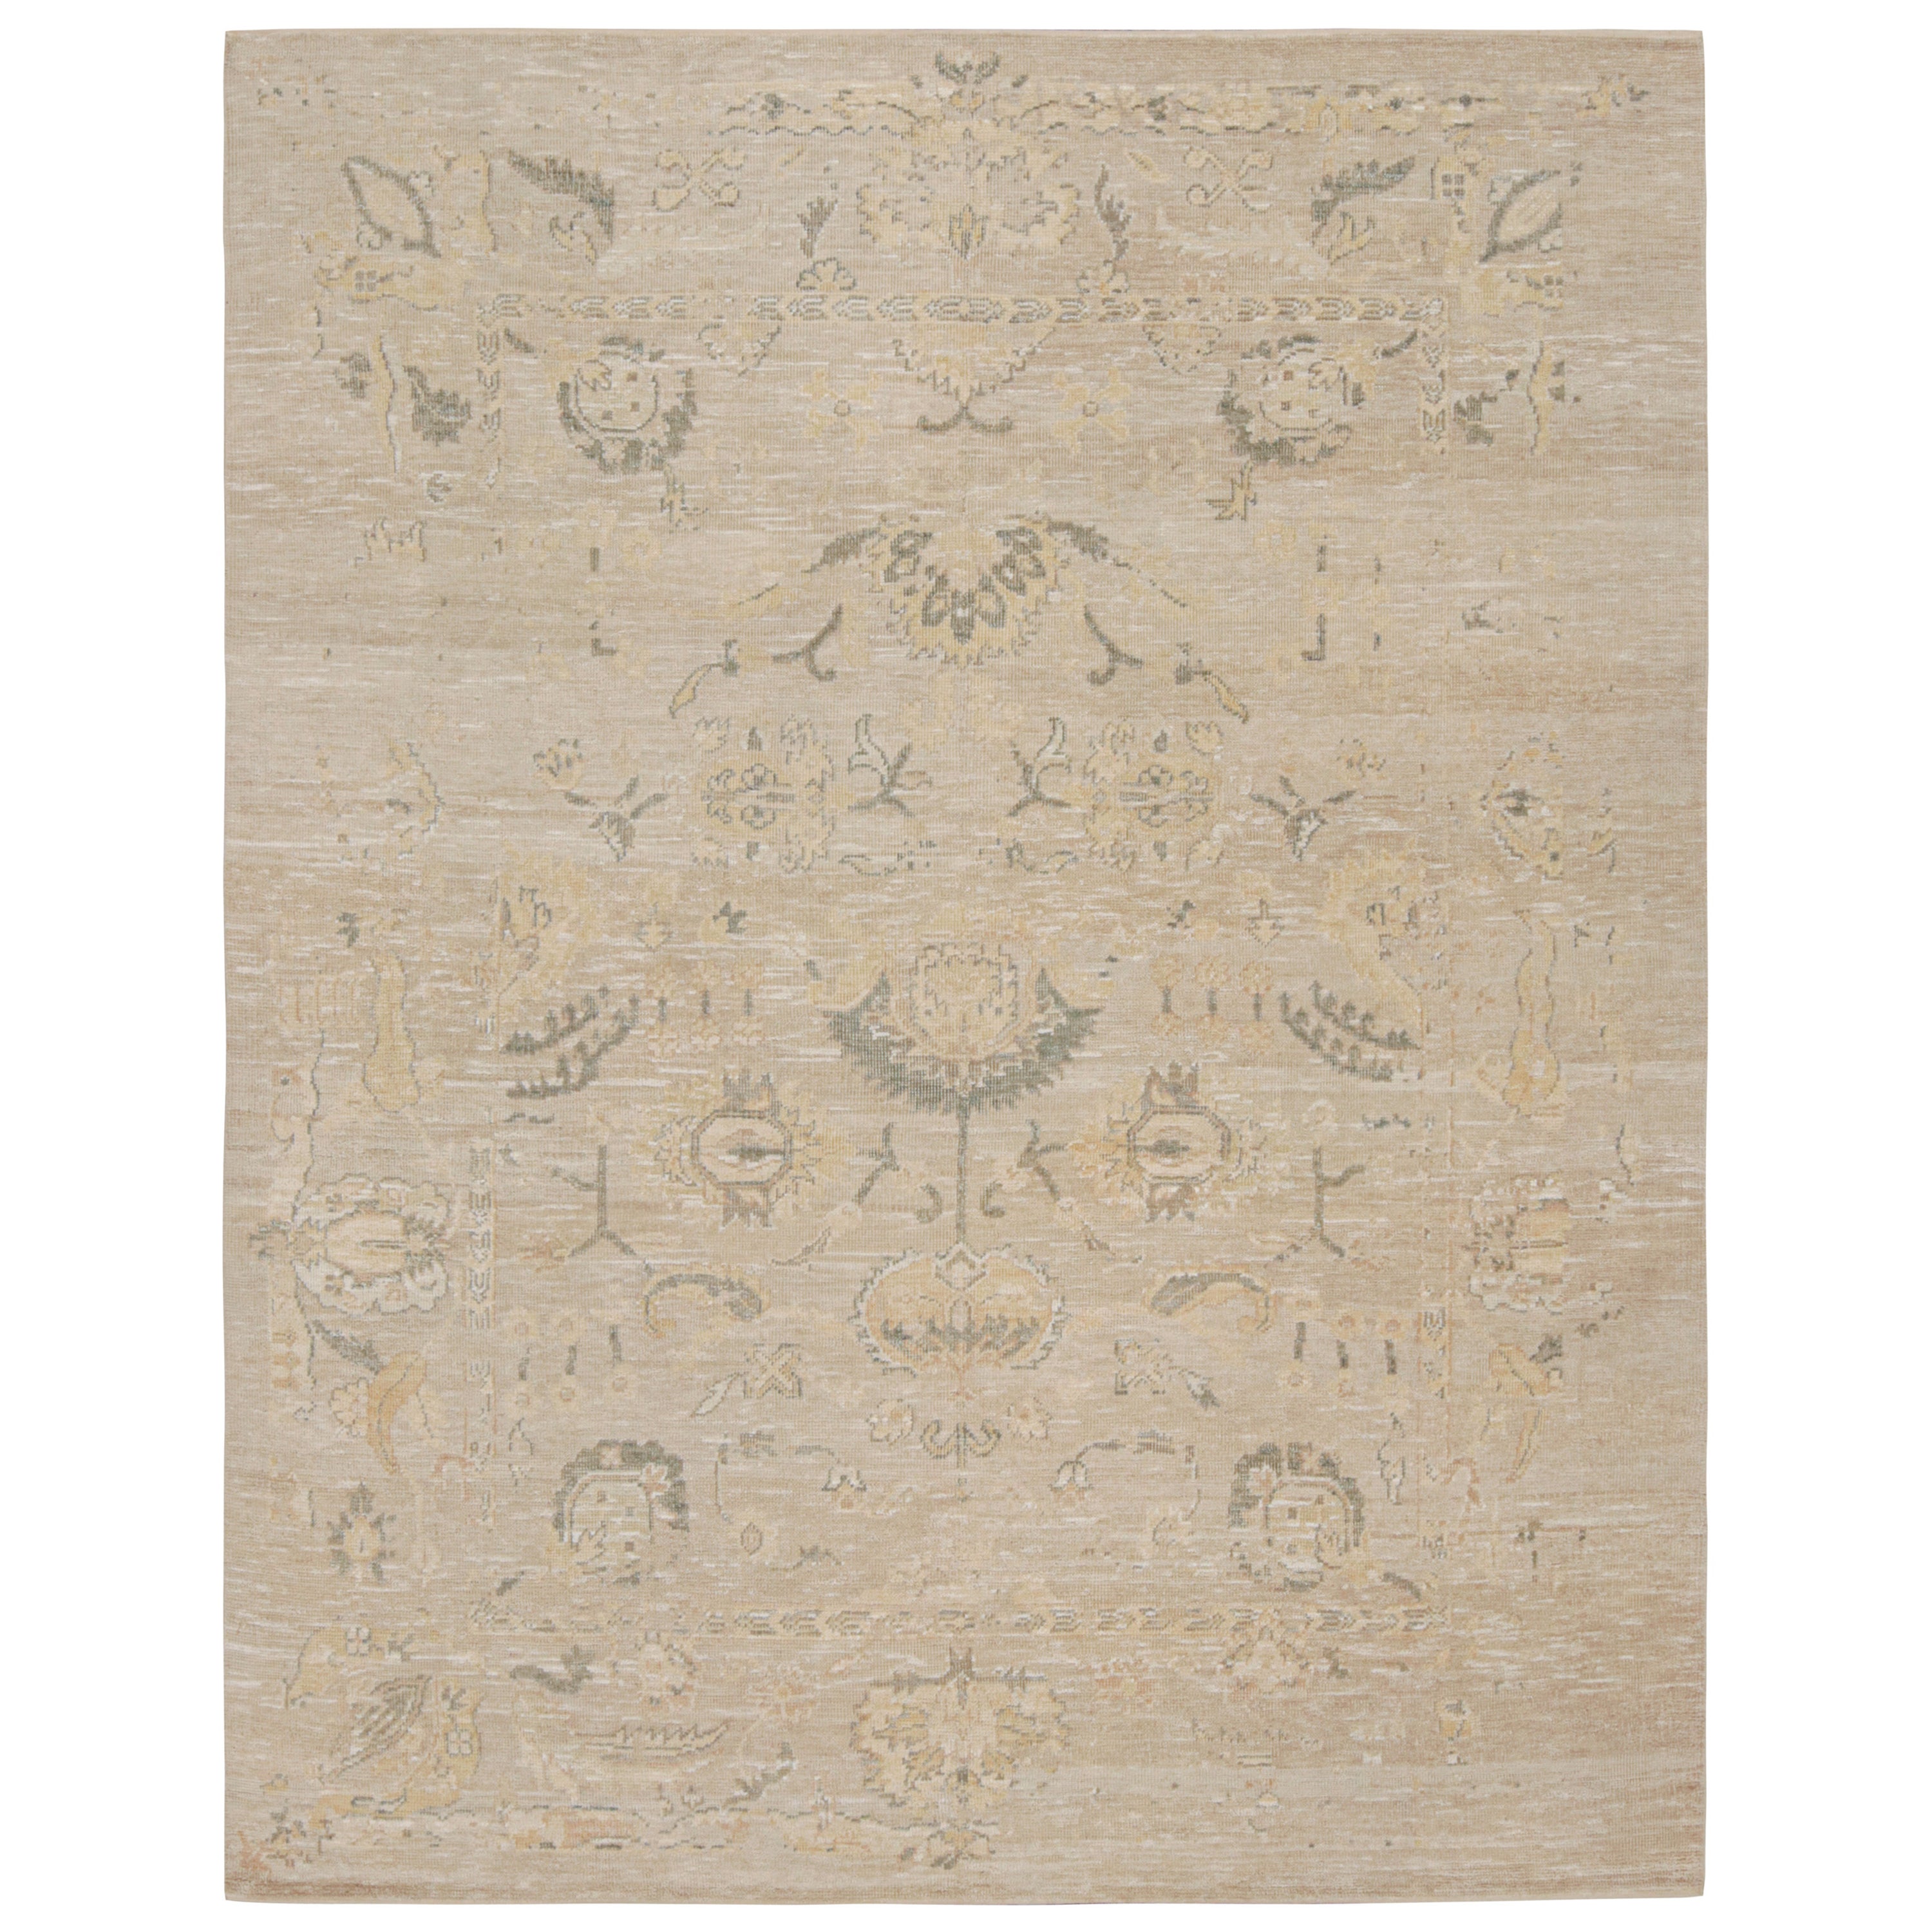 Rug & Kilim's Oushak Style Teppich mit floralen Mustern in Beige und Rust